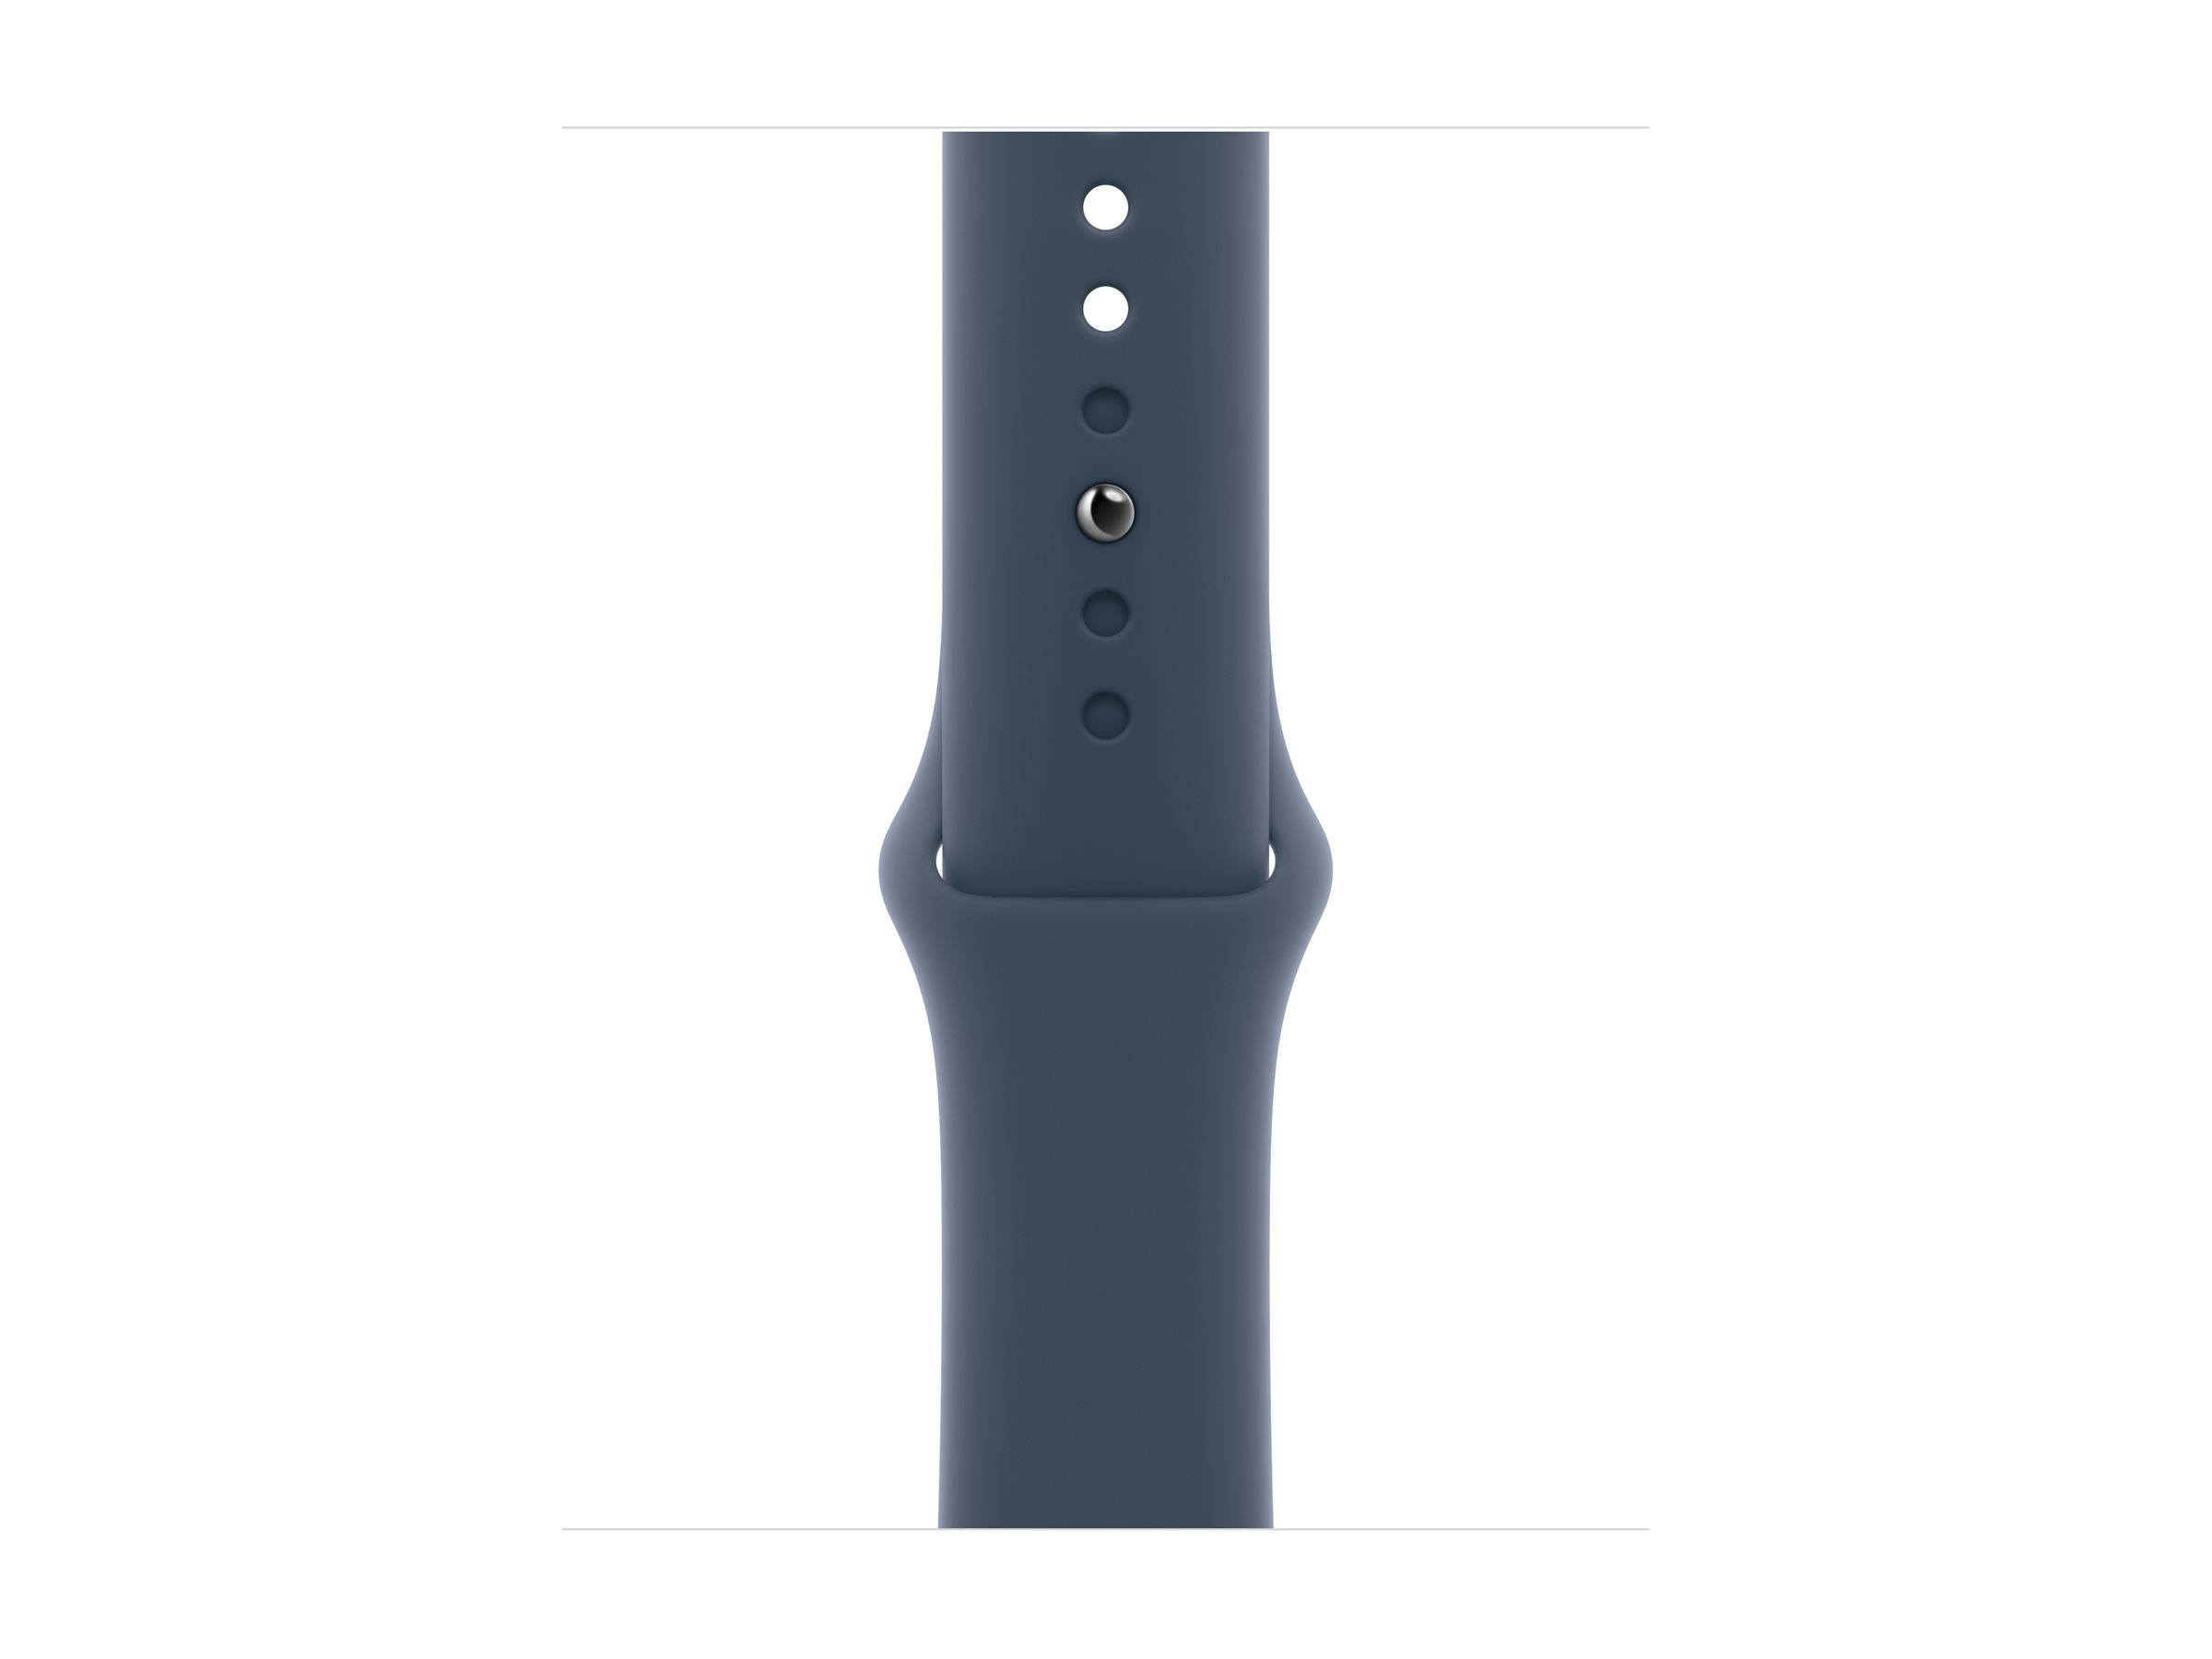 Apple Watch SE (GPS) - 2e génération - 40 mm - aluminium argenté - montre intelligente avec bande sport - fluoroélastomère - bleu orage - taille du bracelet : M/L - 32 Go - Wi-Fi, Bluetooth - 26.4 g - MRE23QF/A - Montres intelligentes